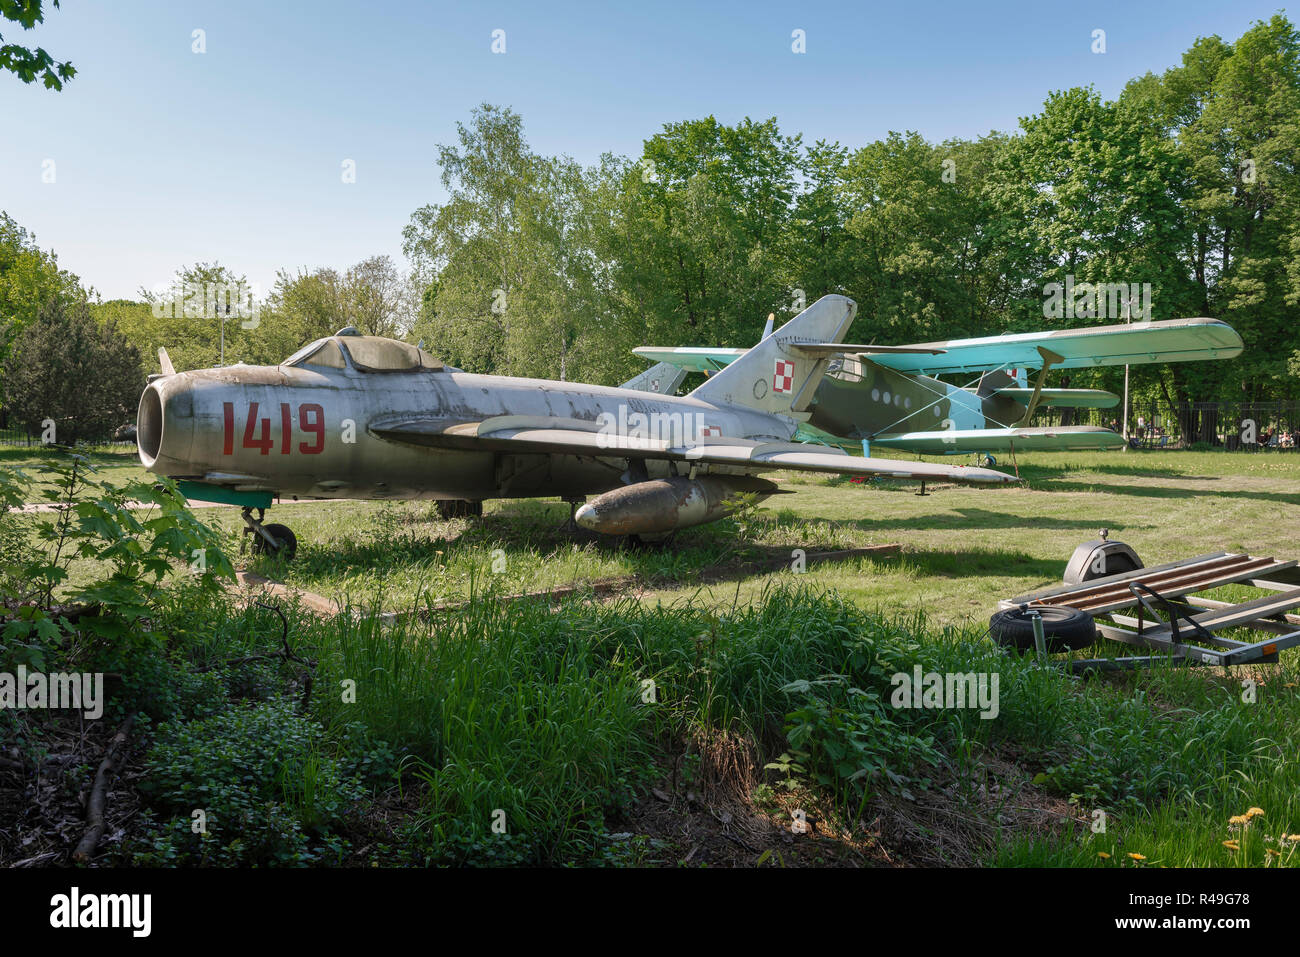 Anni sessanta russo sovietica jet fighter, vista di un Patto di Varsavia era jet fighter aircraft visualizzato in un campo nel Museo di Poznan di armamenti, Polonia. Foto Stock